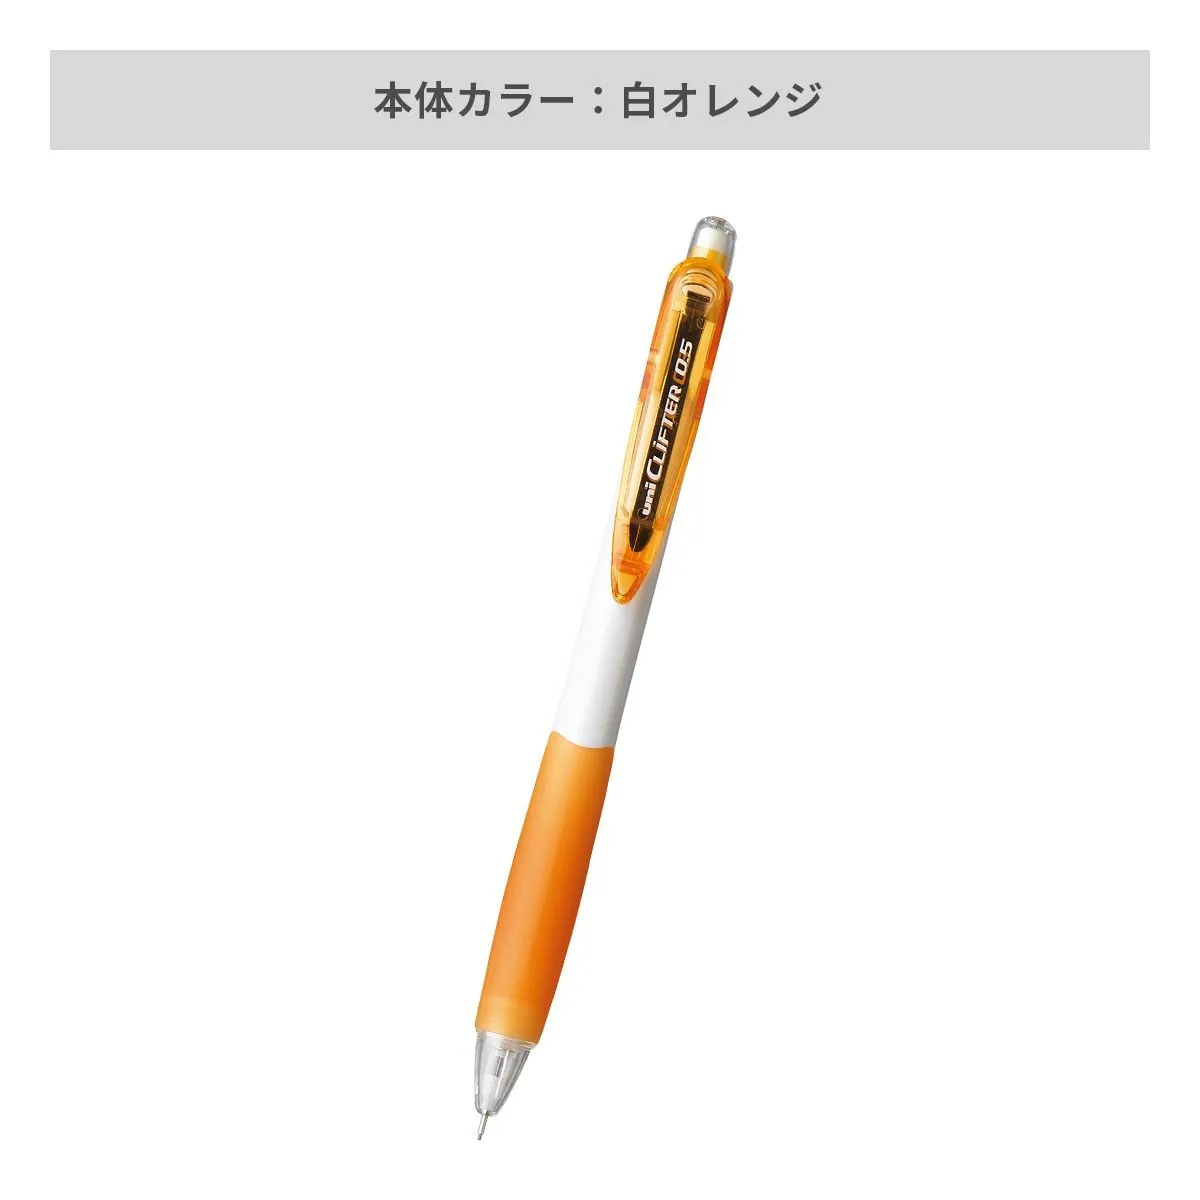 三菱鉛筆 クリフター シャープペン 白軸 0.5mm【名入れシャーペン / インクジェット印刷】 画像4